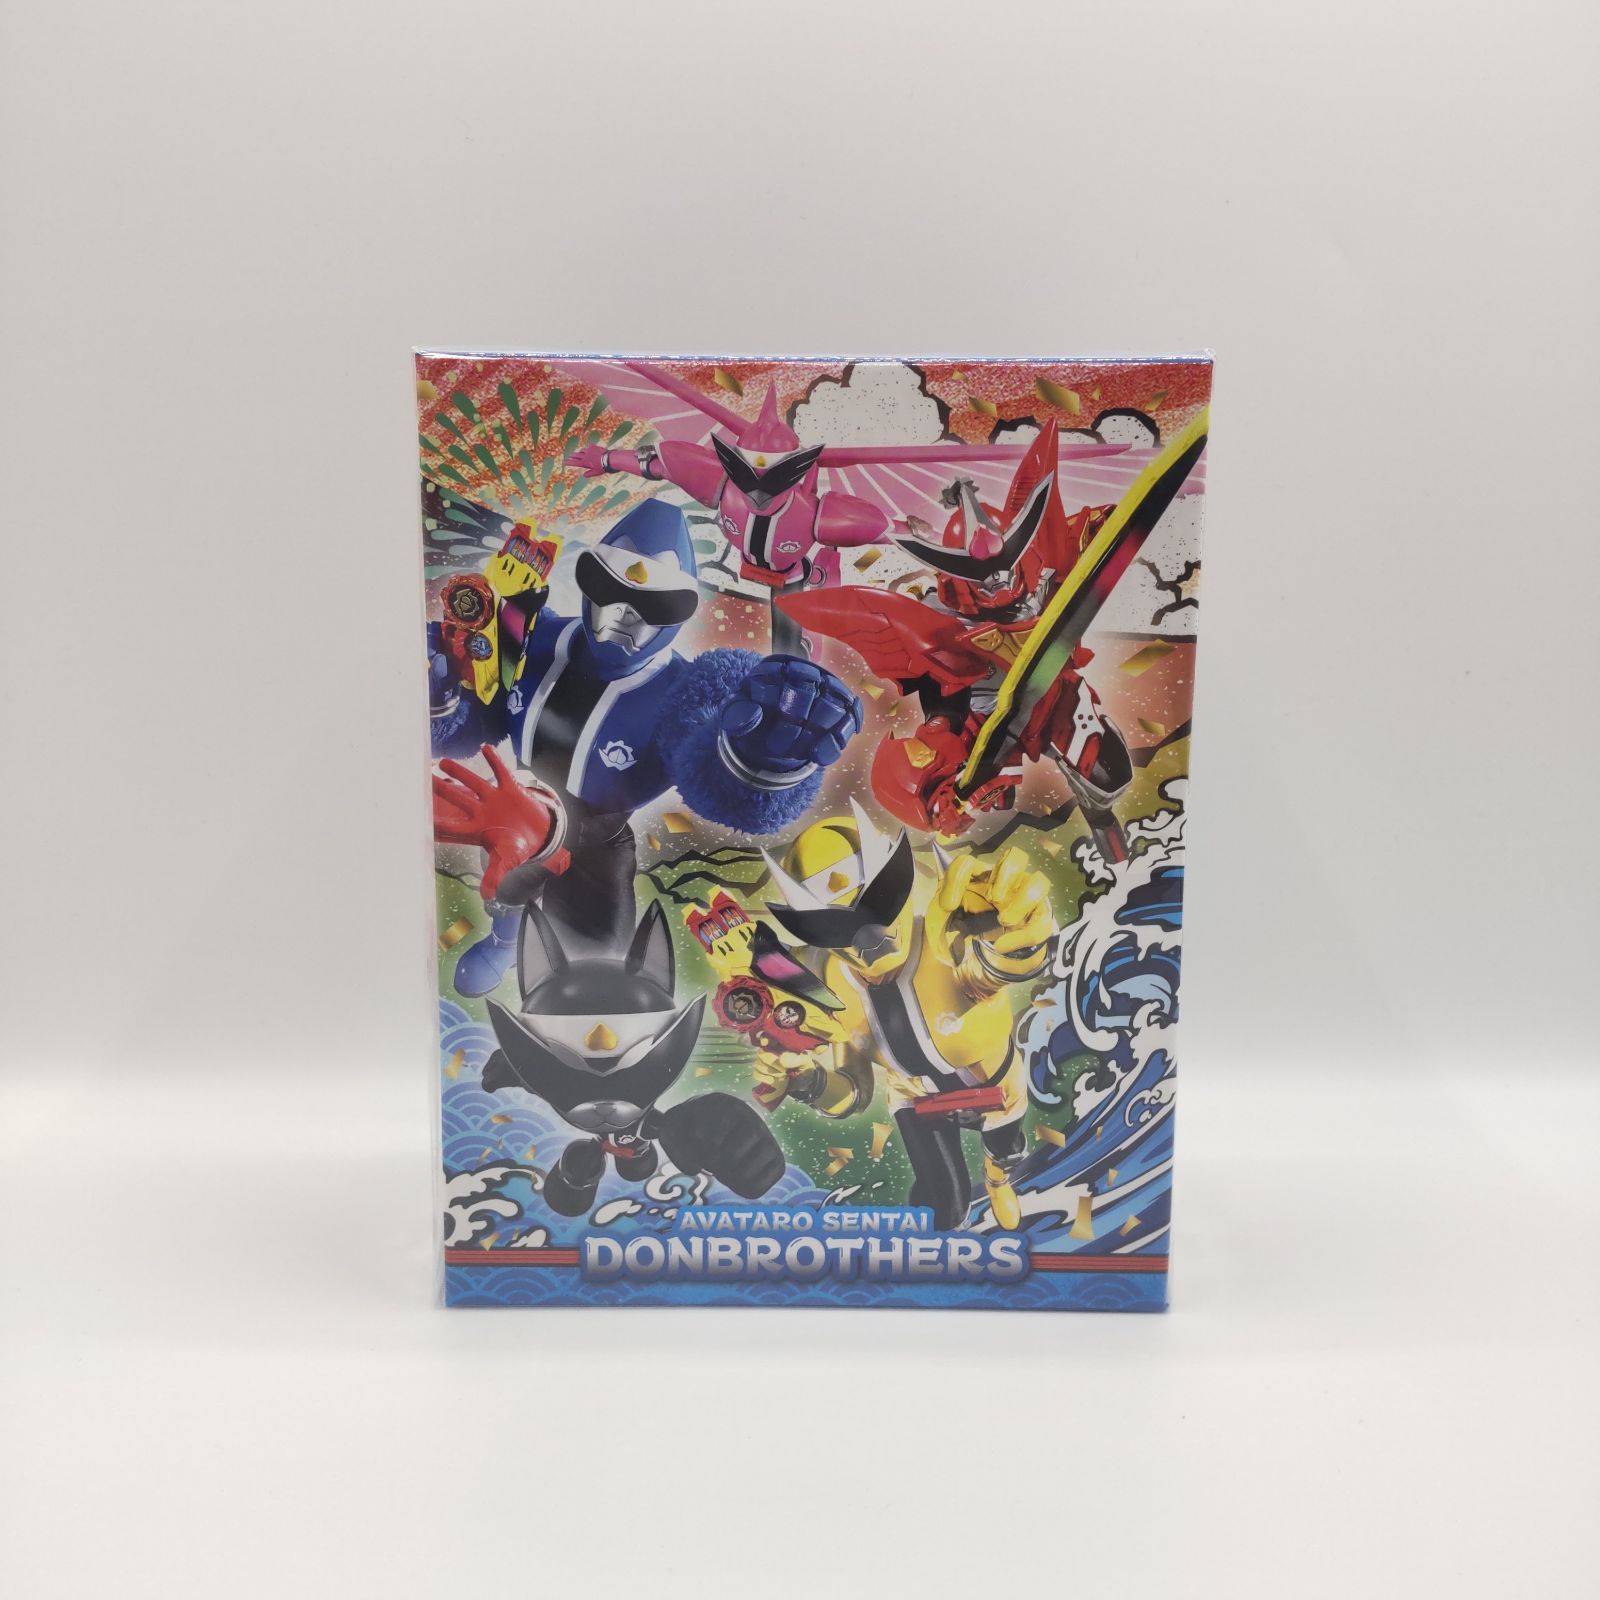 スーパー戦隊シリーズ 暴太郎戦隊 ドンブラザーズ Blu-ray 全巻セット 